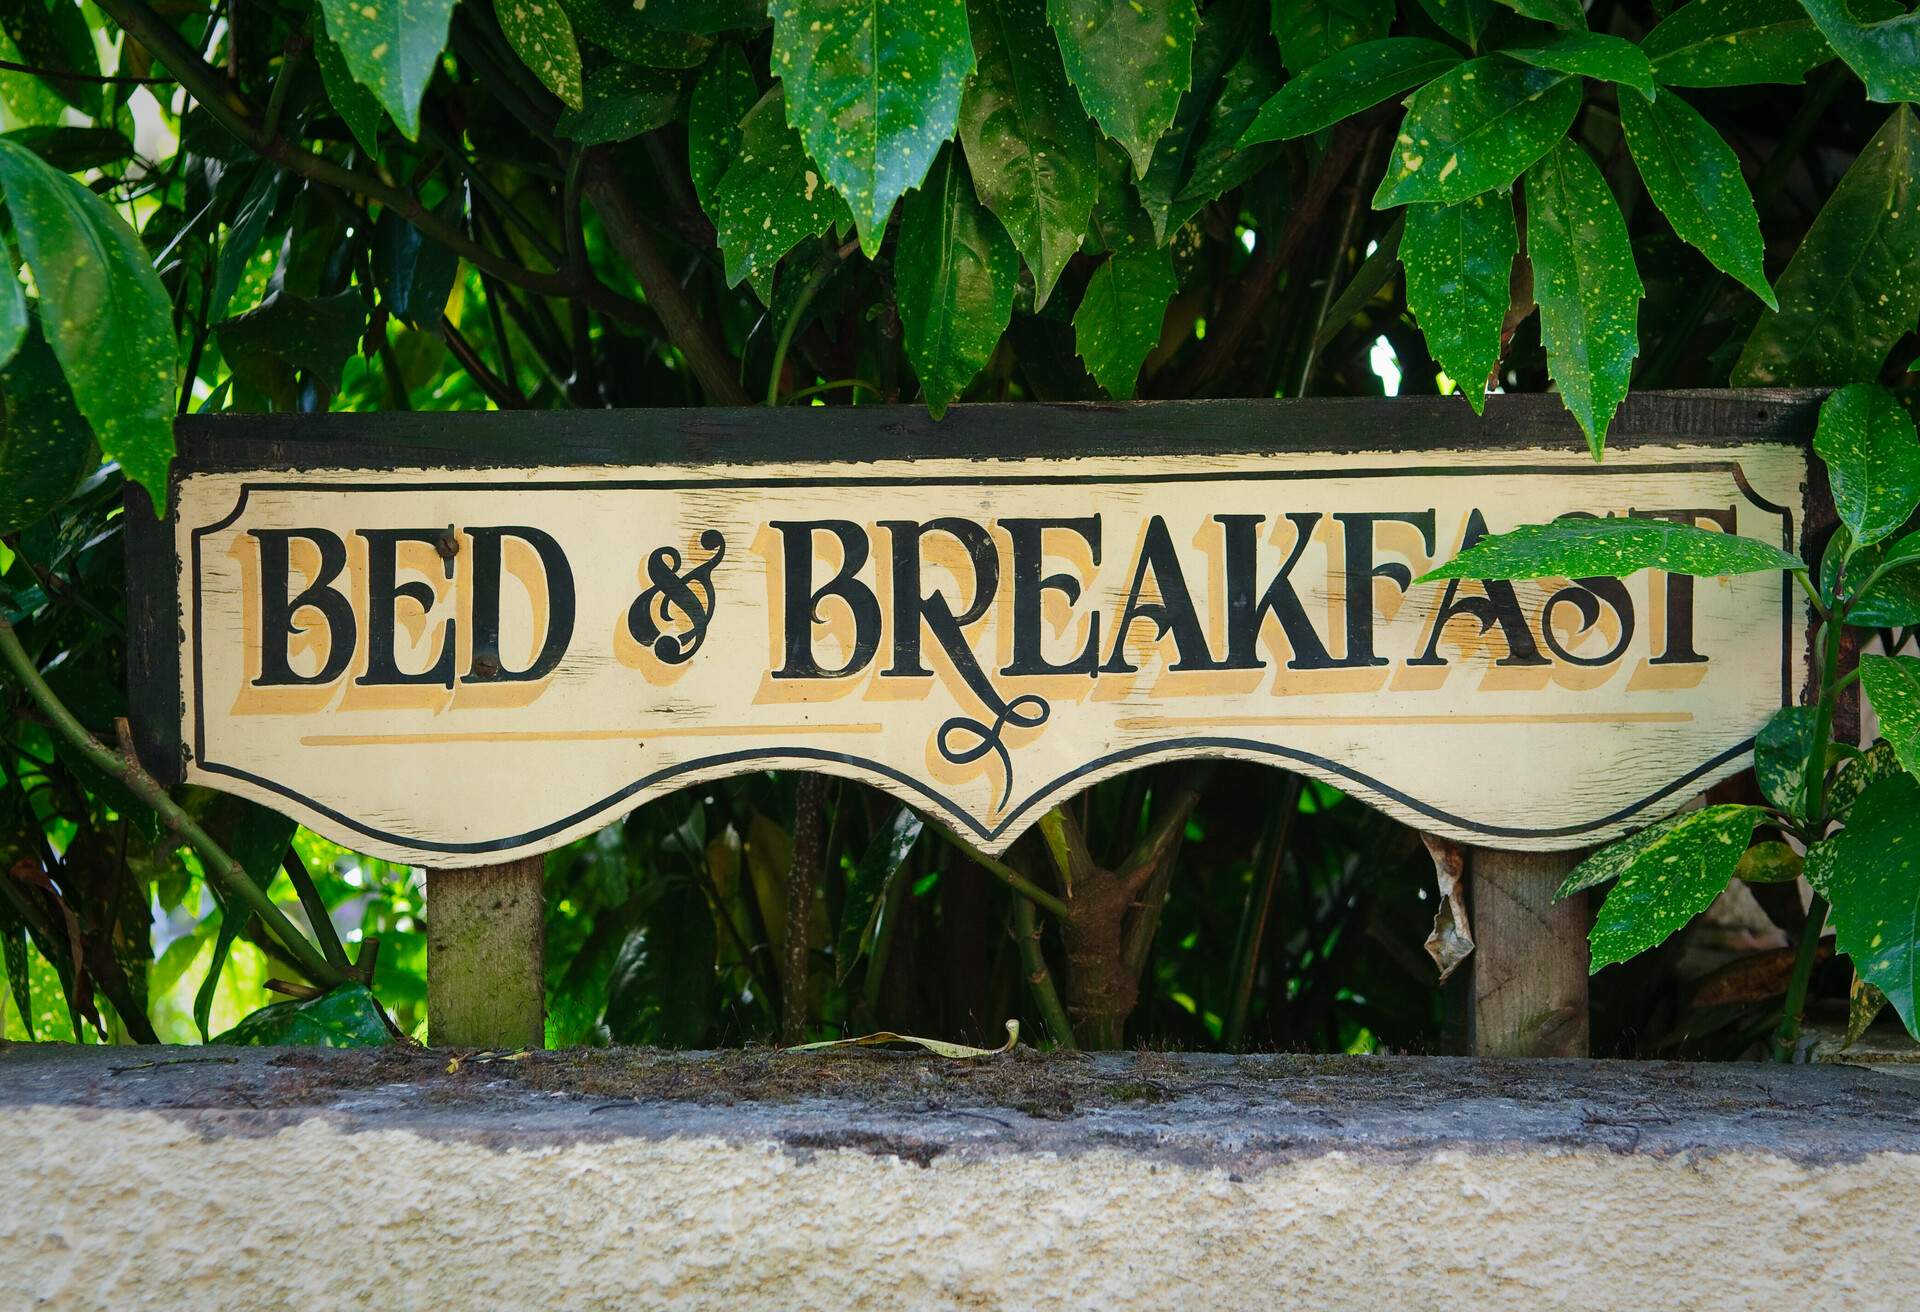 Bed and breakfast vintage sign on fence. Devon, UK.